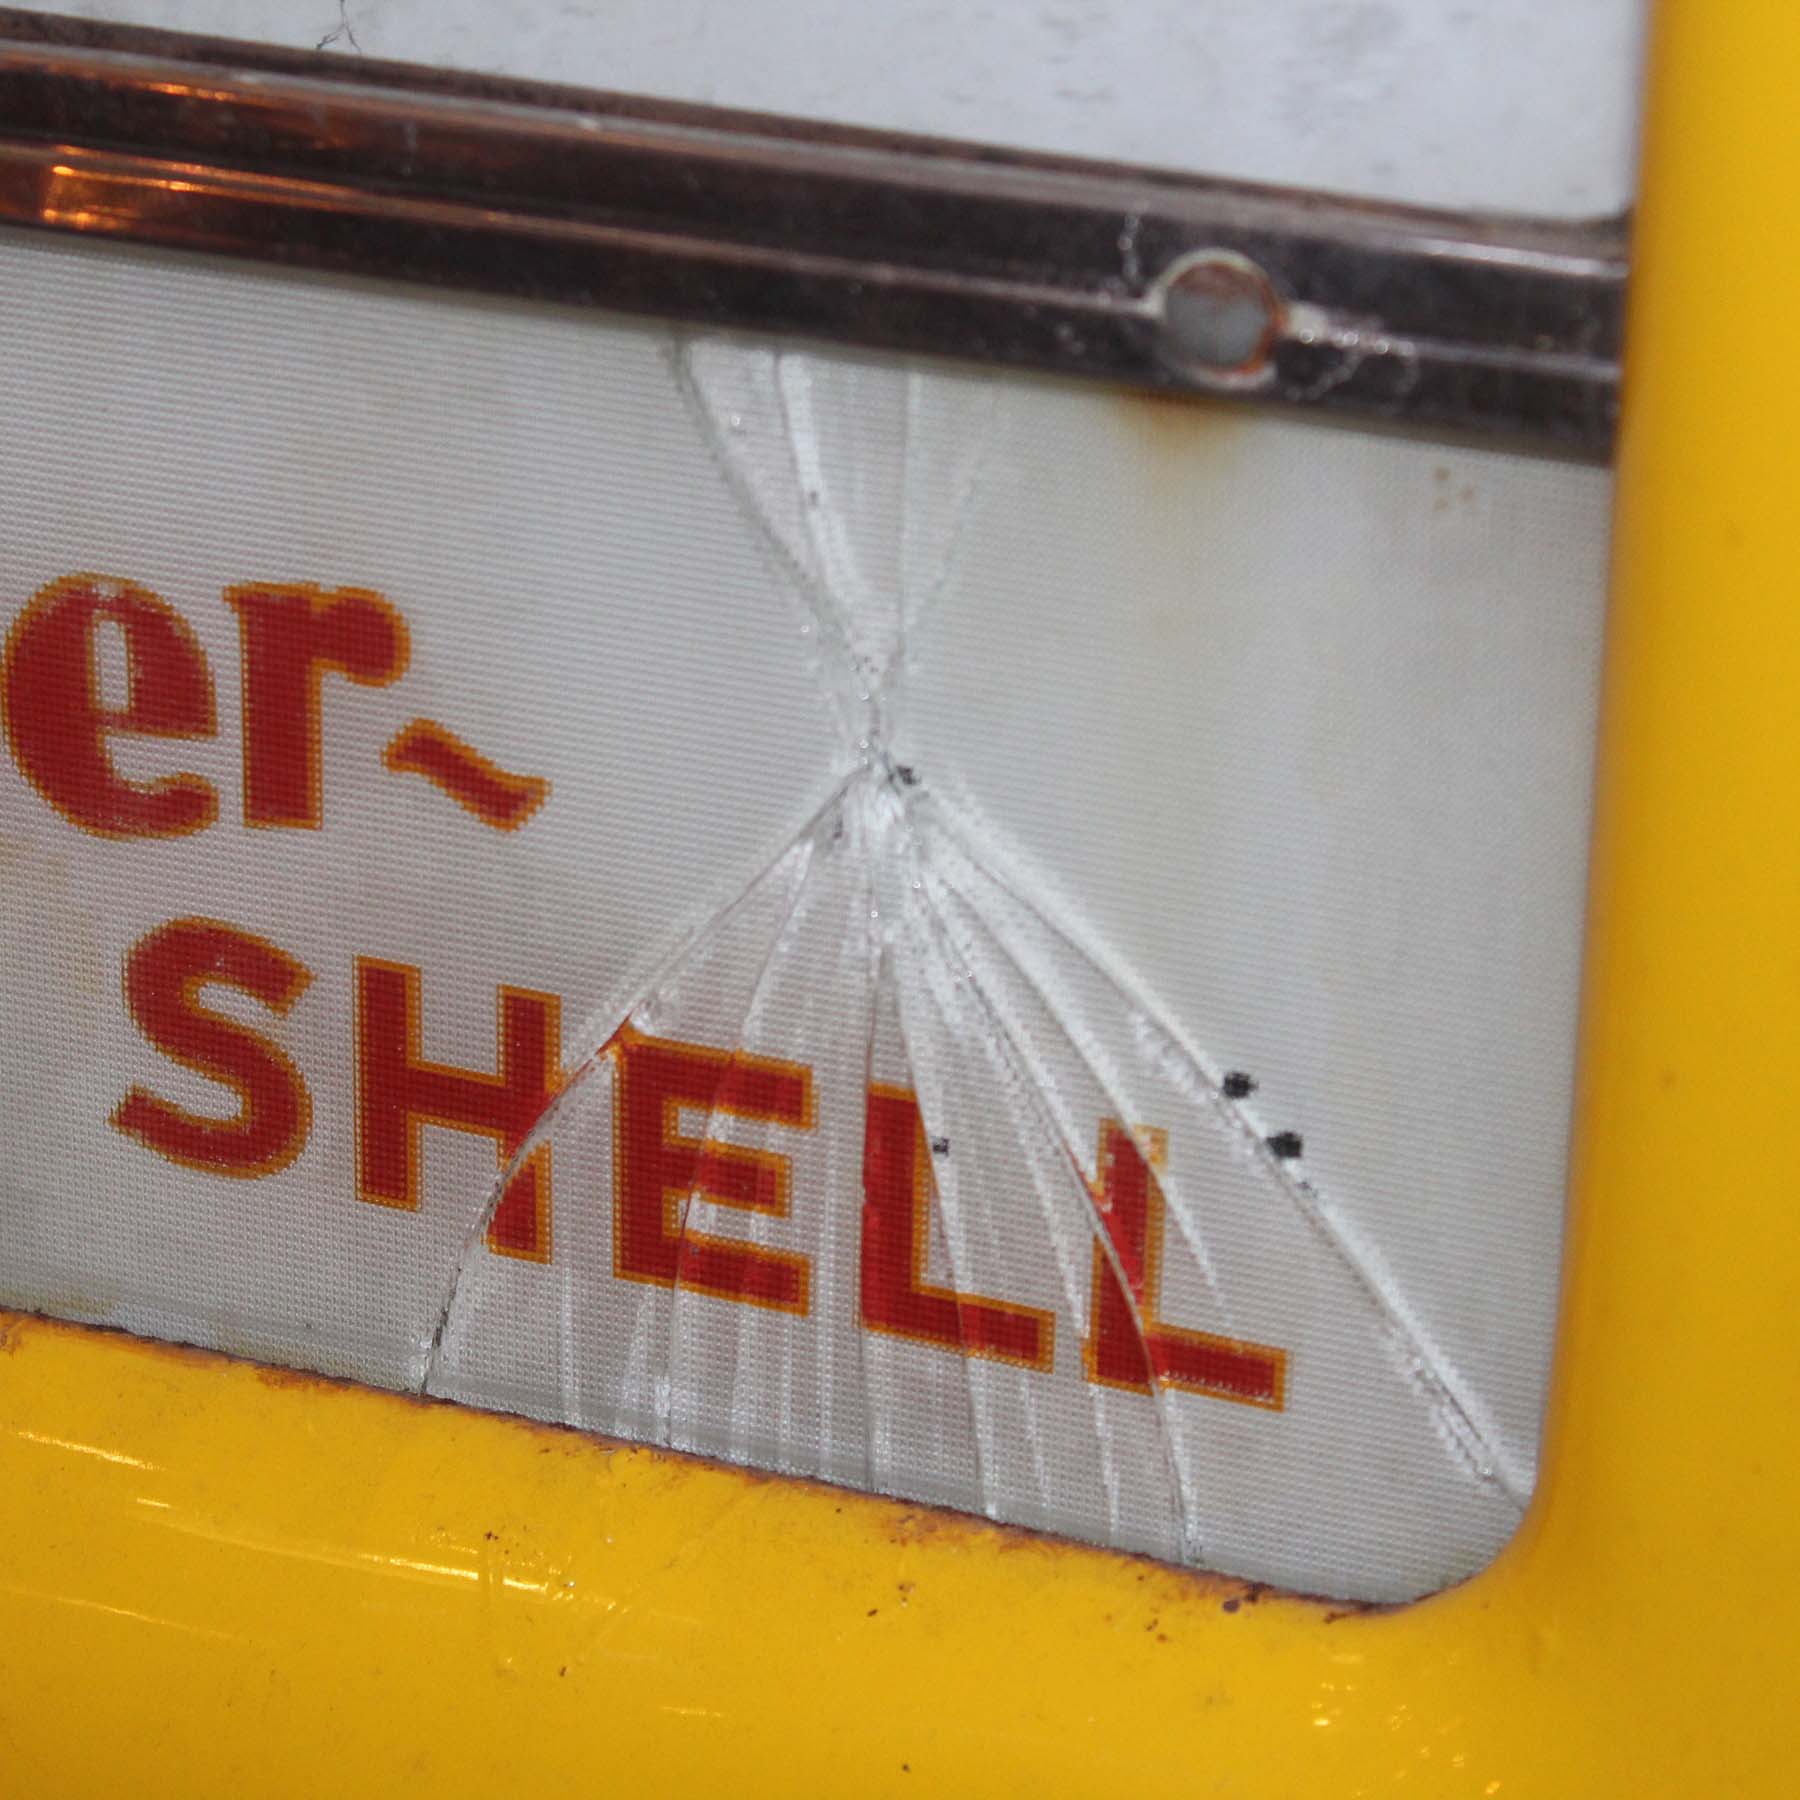 SOLD Vintage “Super Shell” Gas Station Pump-67047